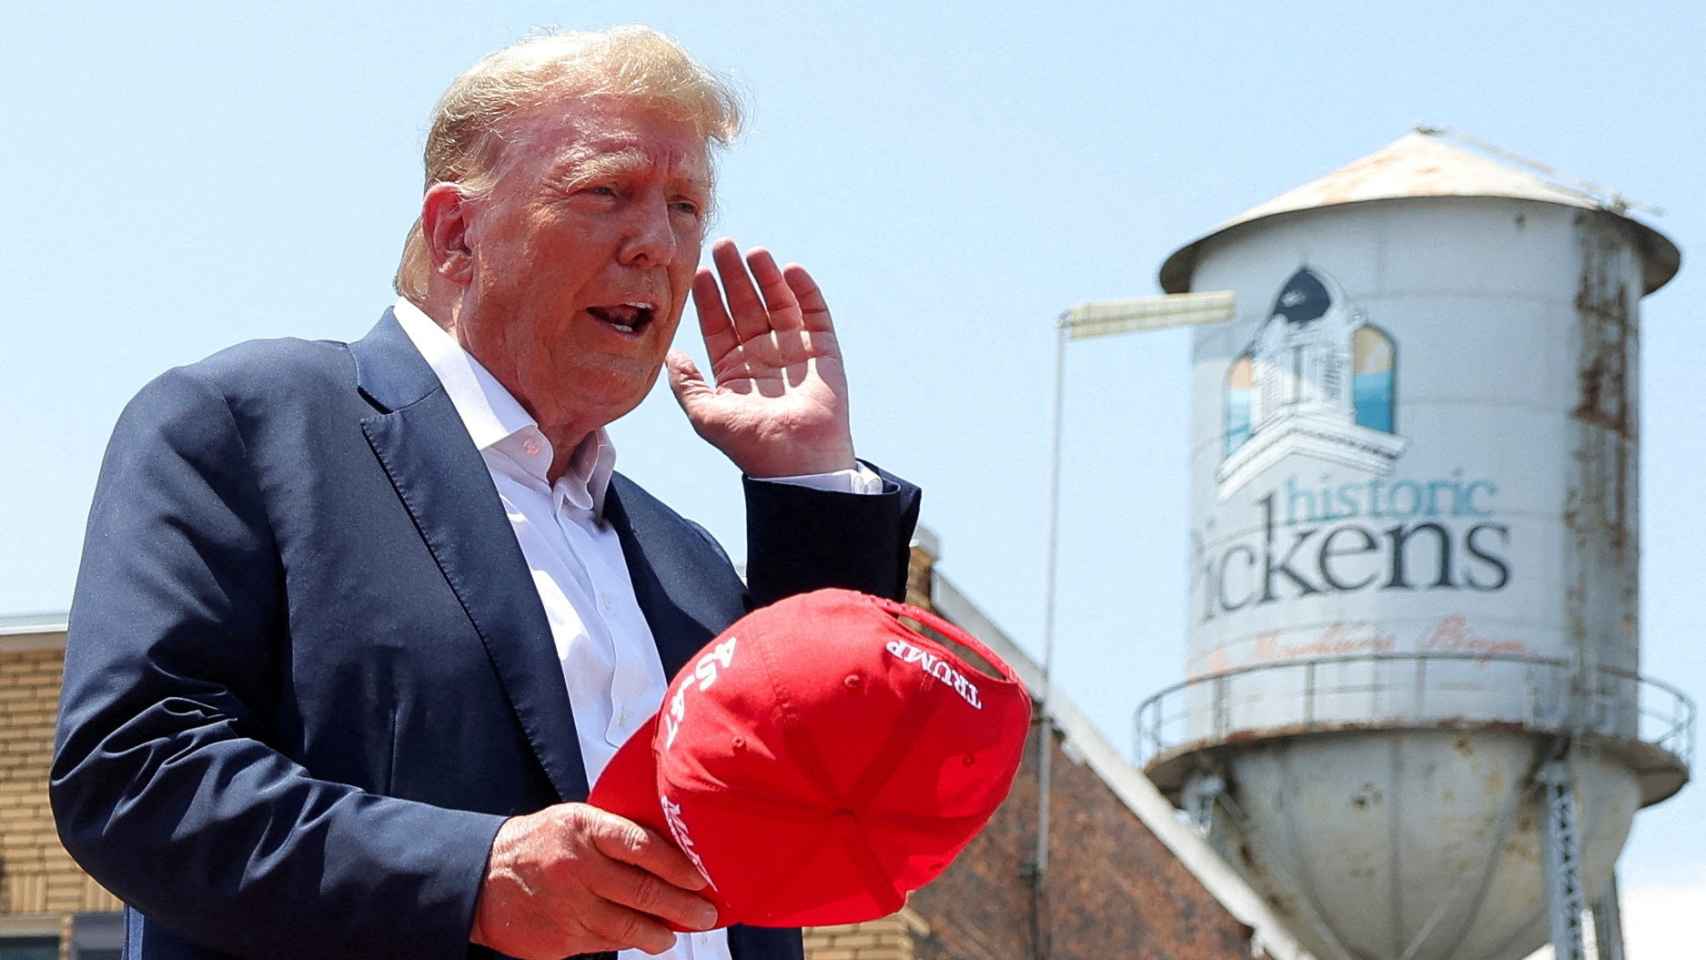 El expresidente de los Estados Unidos, Donald Trump, gesticula el día de su mitin Make America Great Again en Pickens, Carolina del Sur, EE. UU., el 1 de julio de 2023.